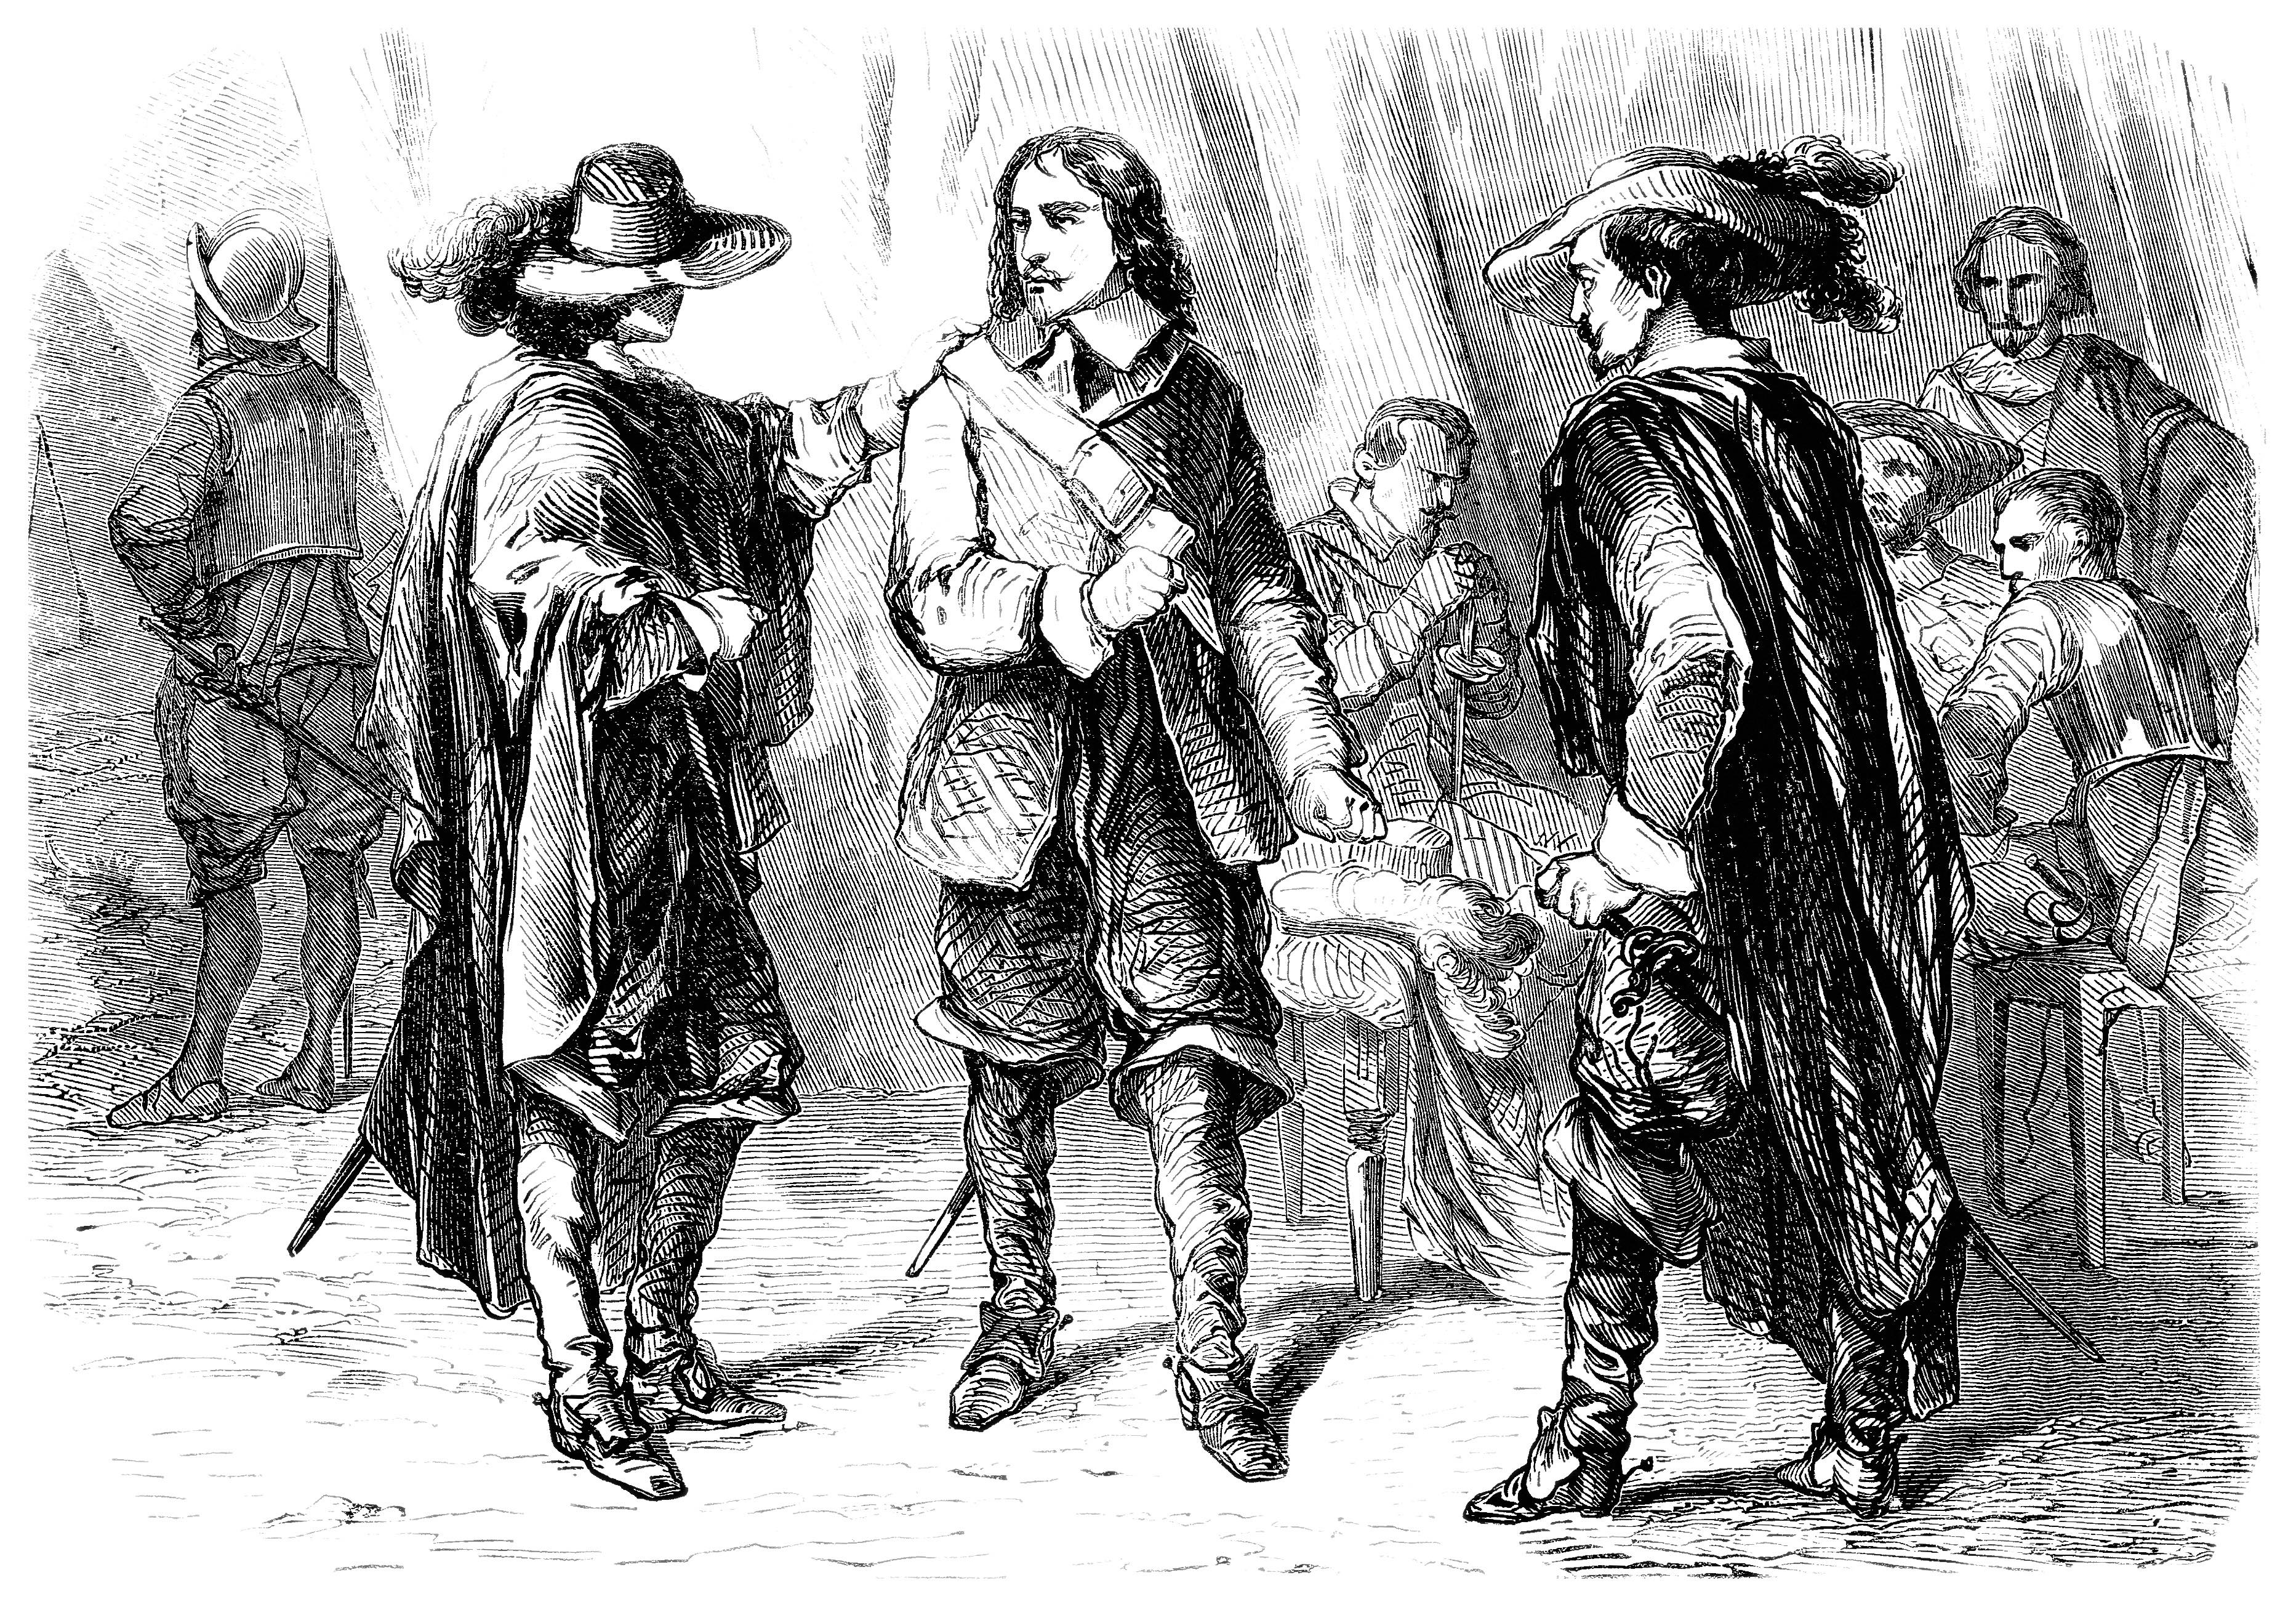 Porthos, Aramis, and Athos, the Three Musketeers